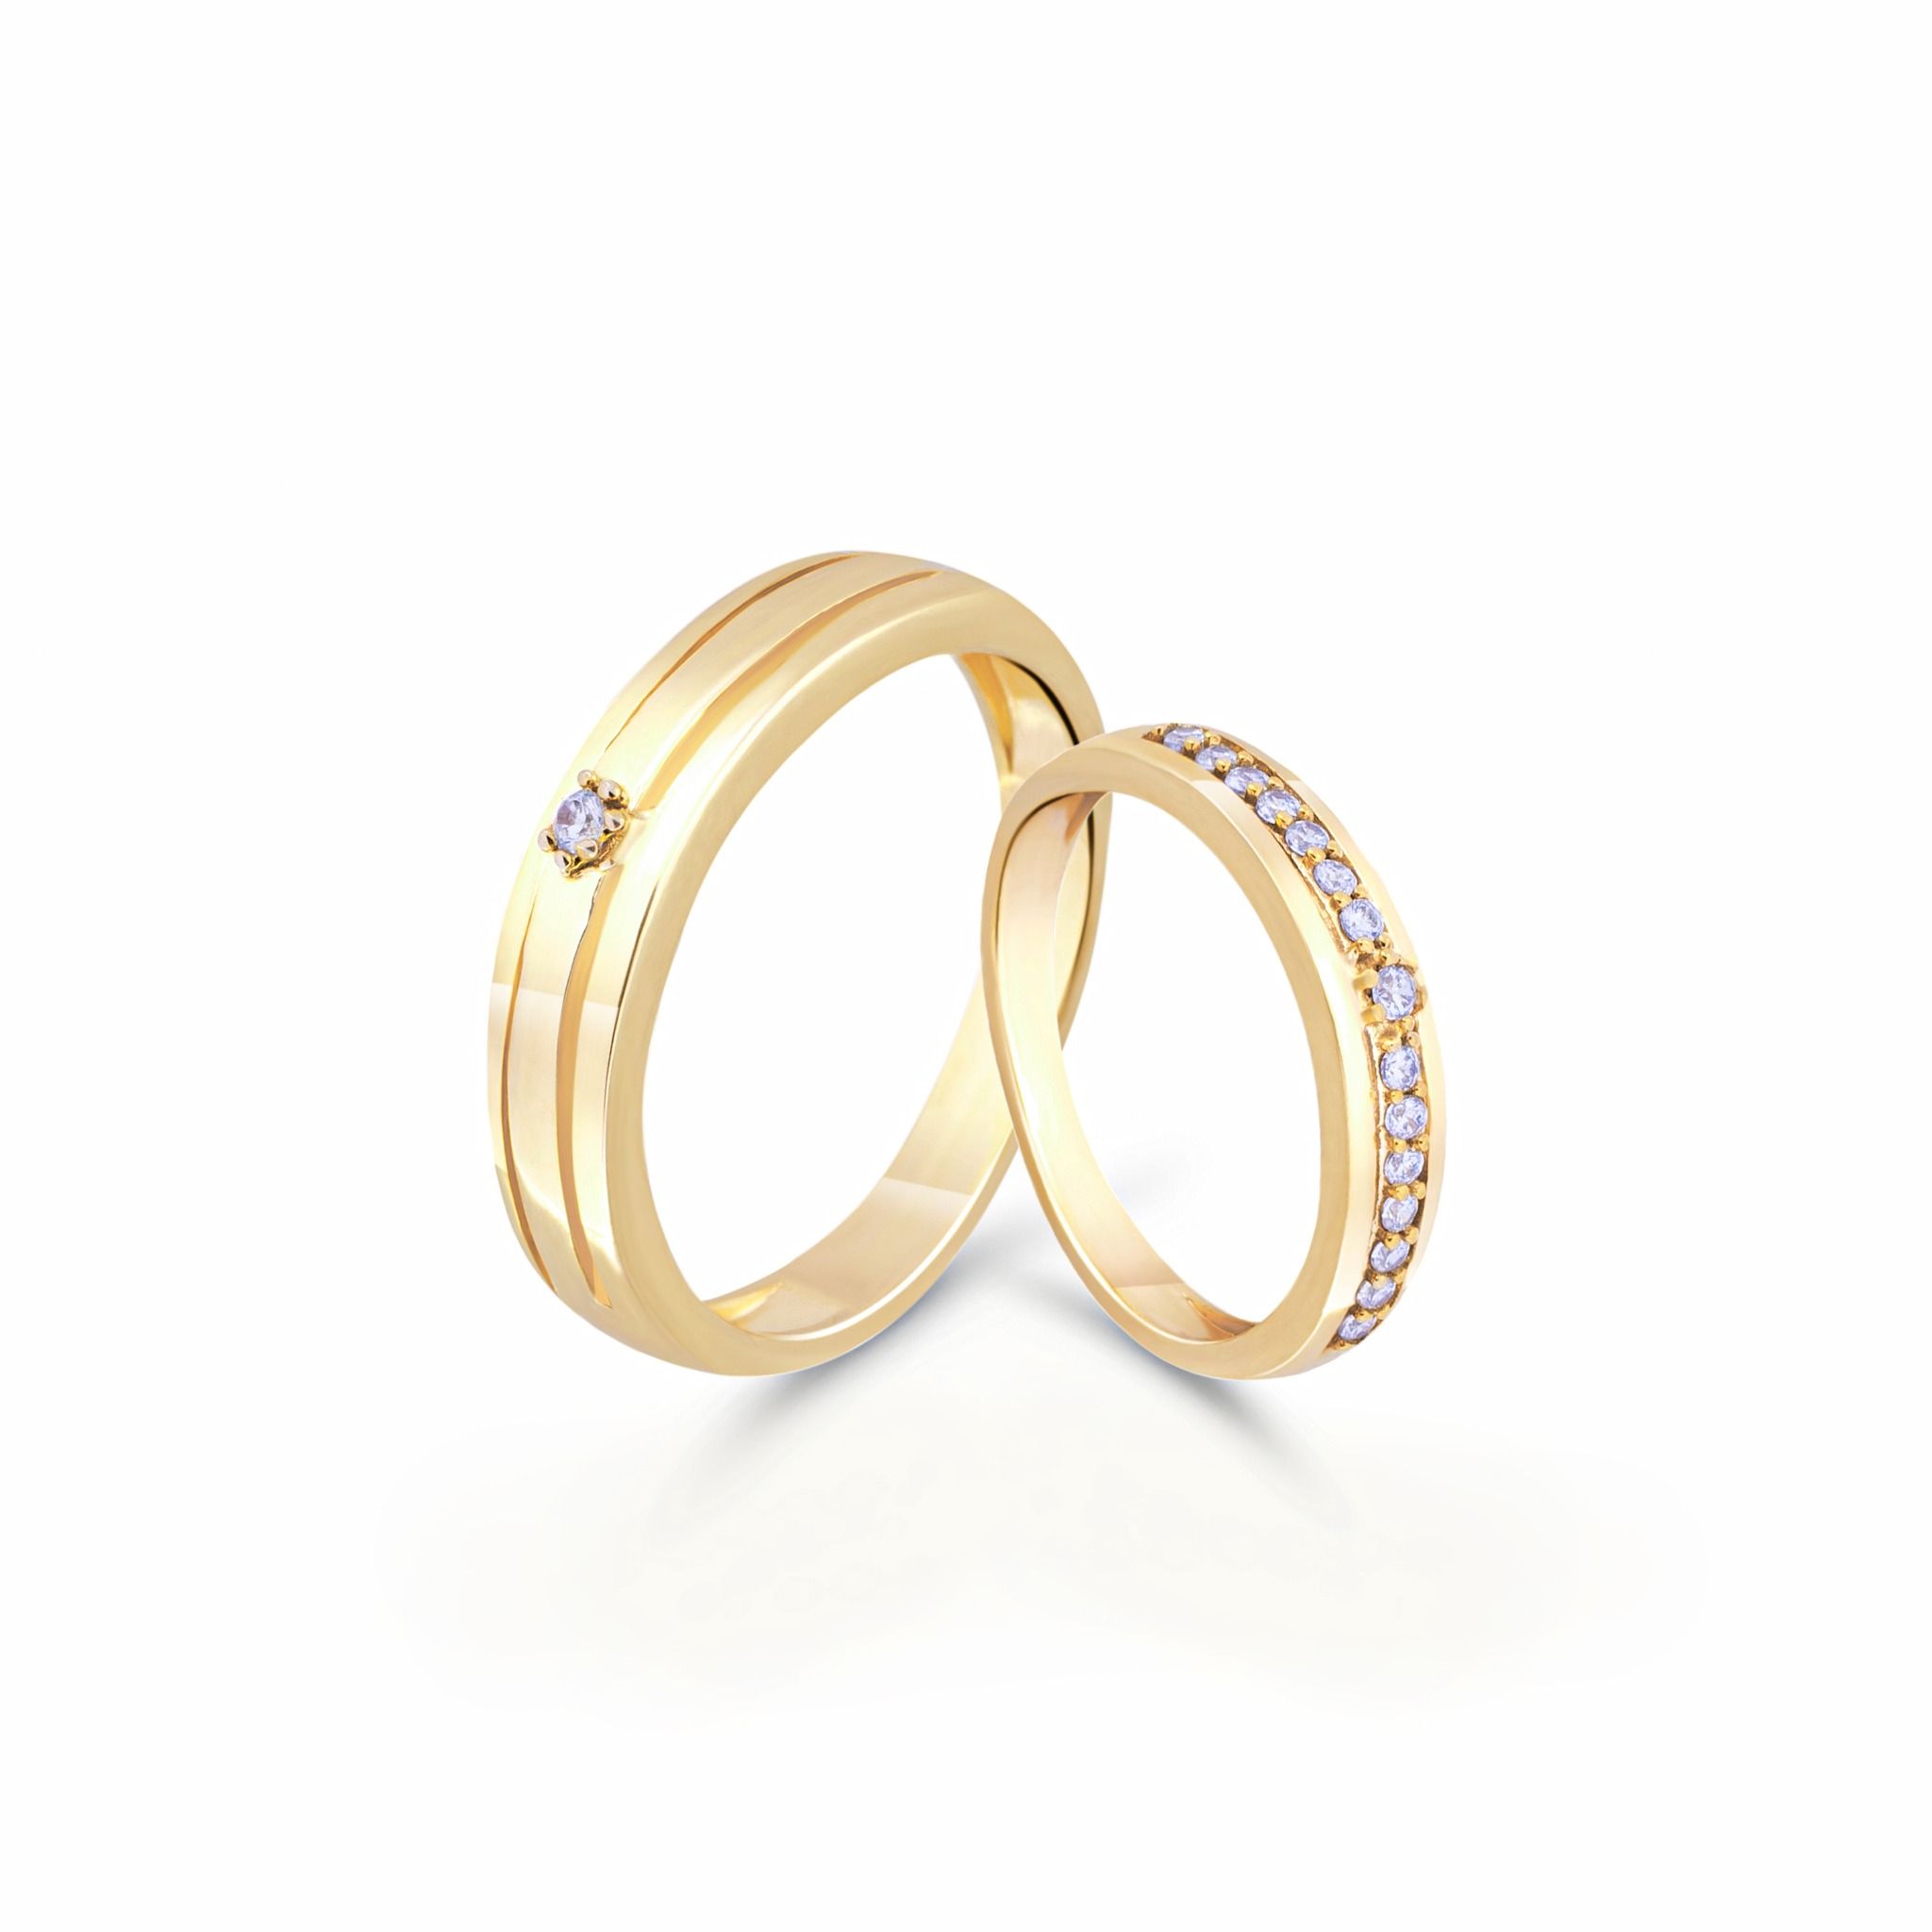 Cặp nhẫn cưới BL04